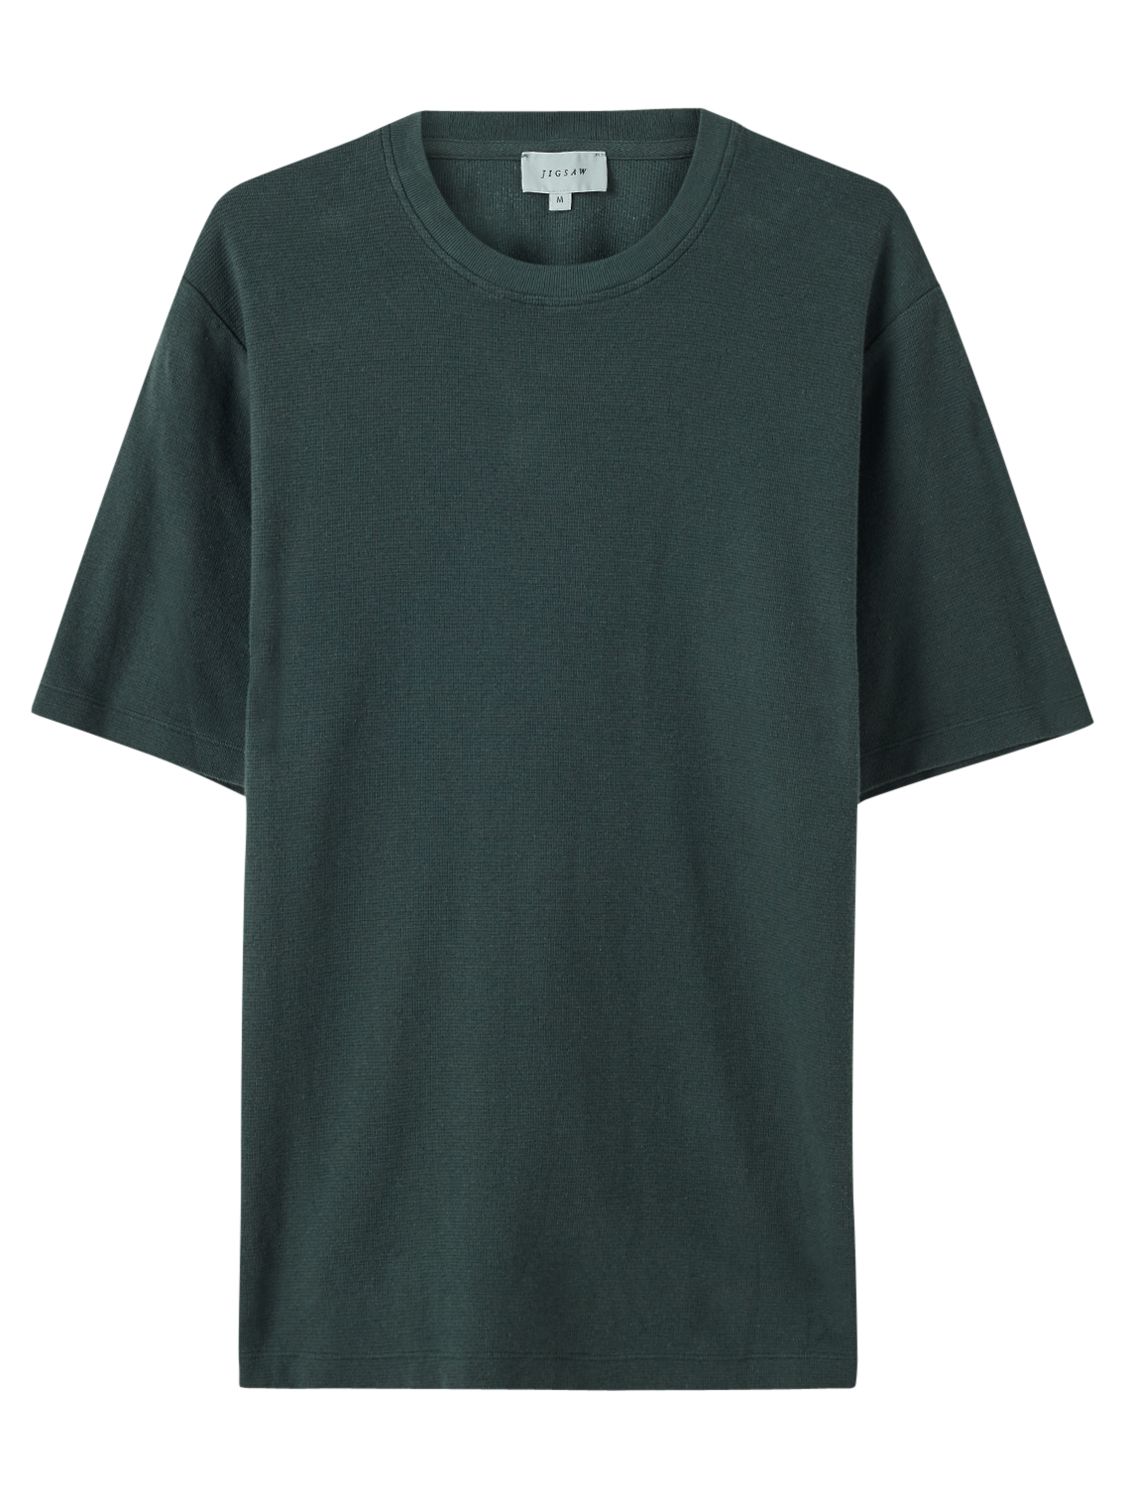 Men's T-Shirts | Designer & Casual T-Shirts | John Lewis